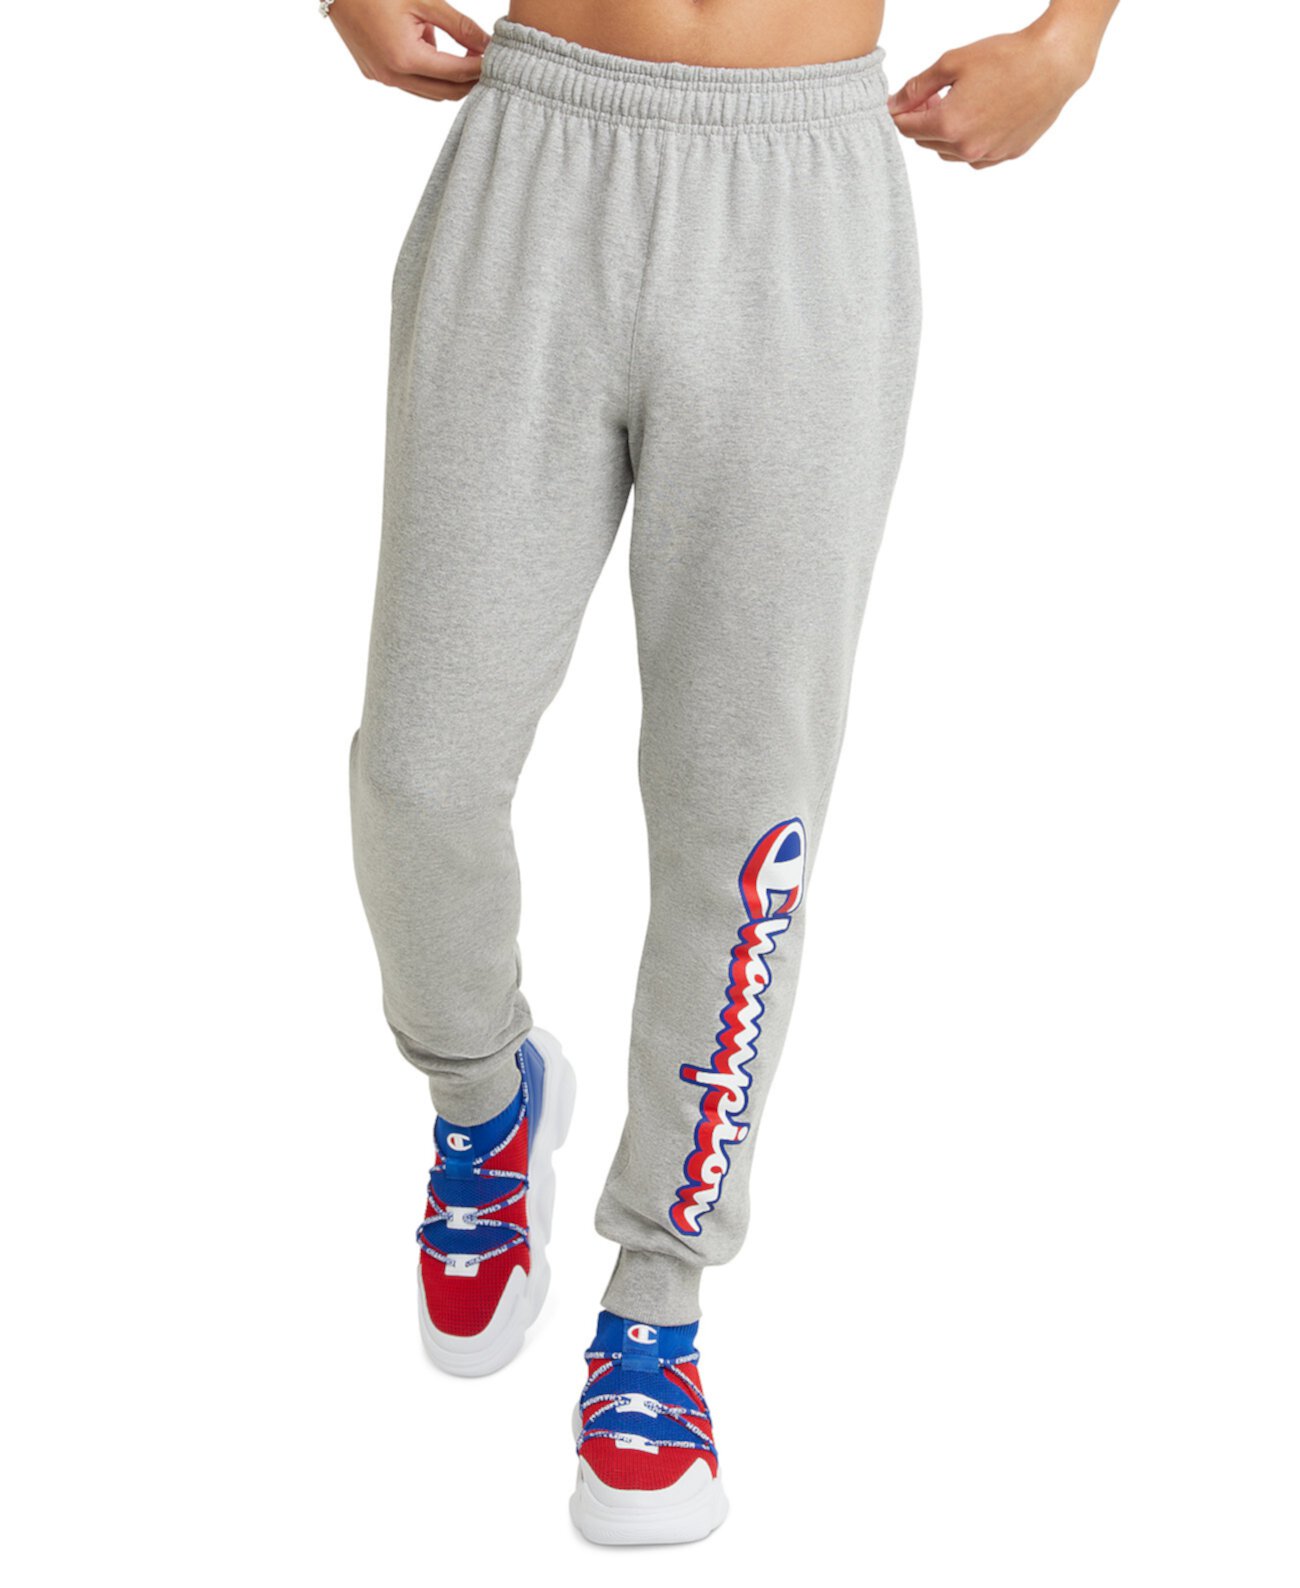 Мужские брюки-джоггеры PowerBlend с логотипом и графикой Champion